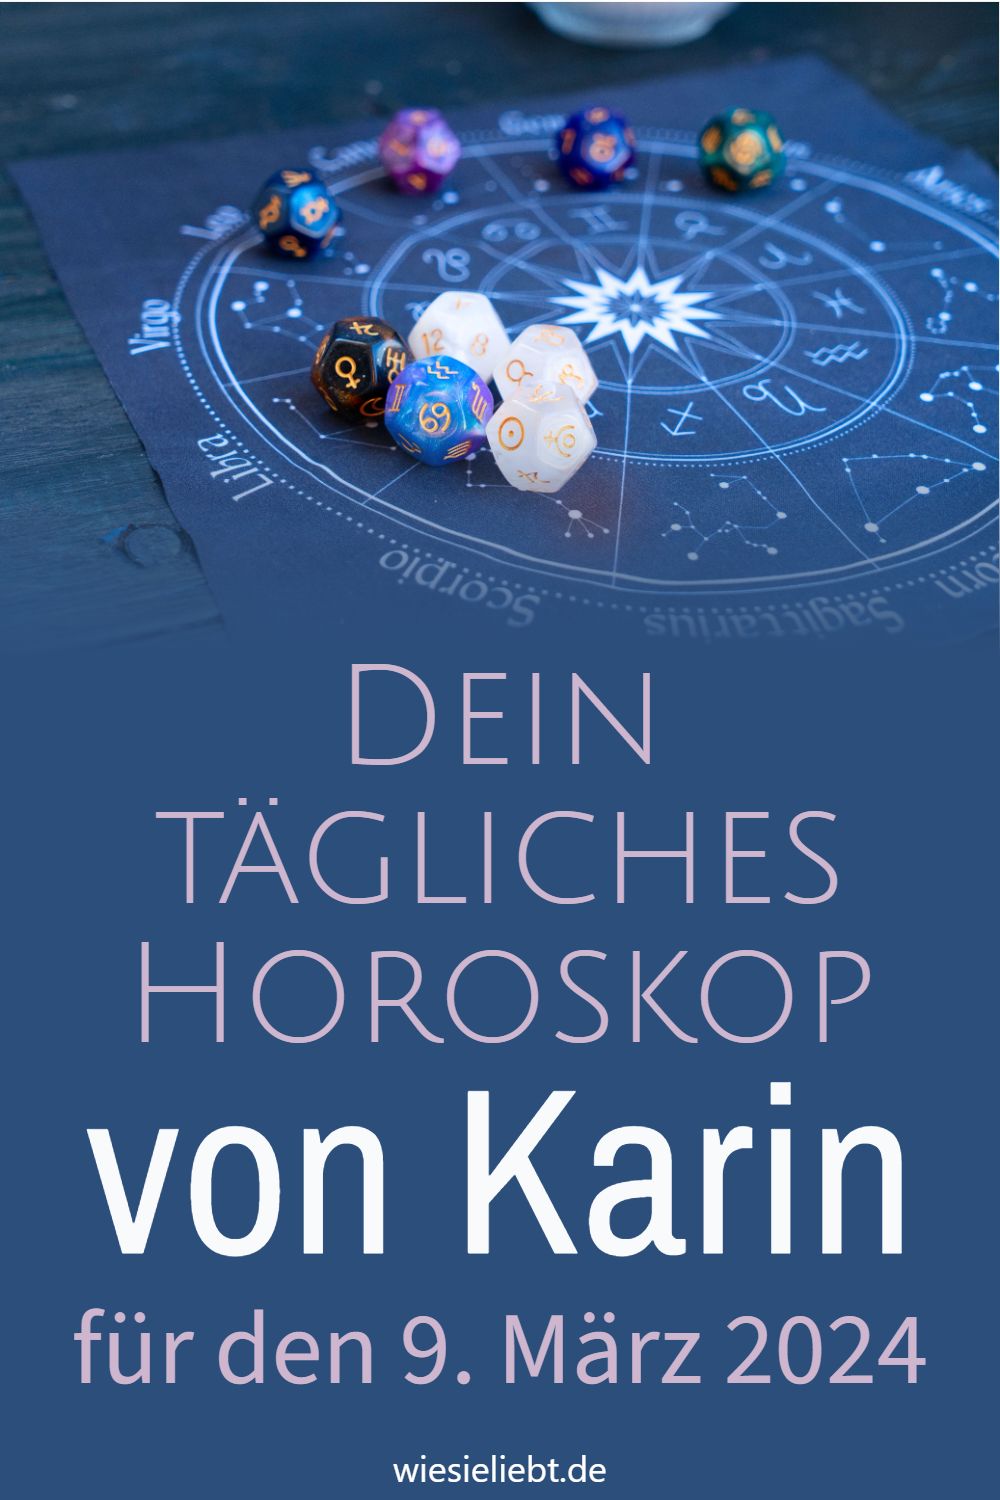 Dein tägliches Horoskop von Karin für den 9. März 2024